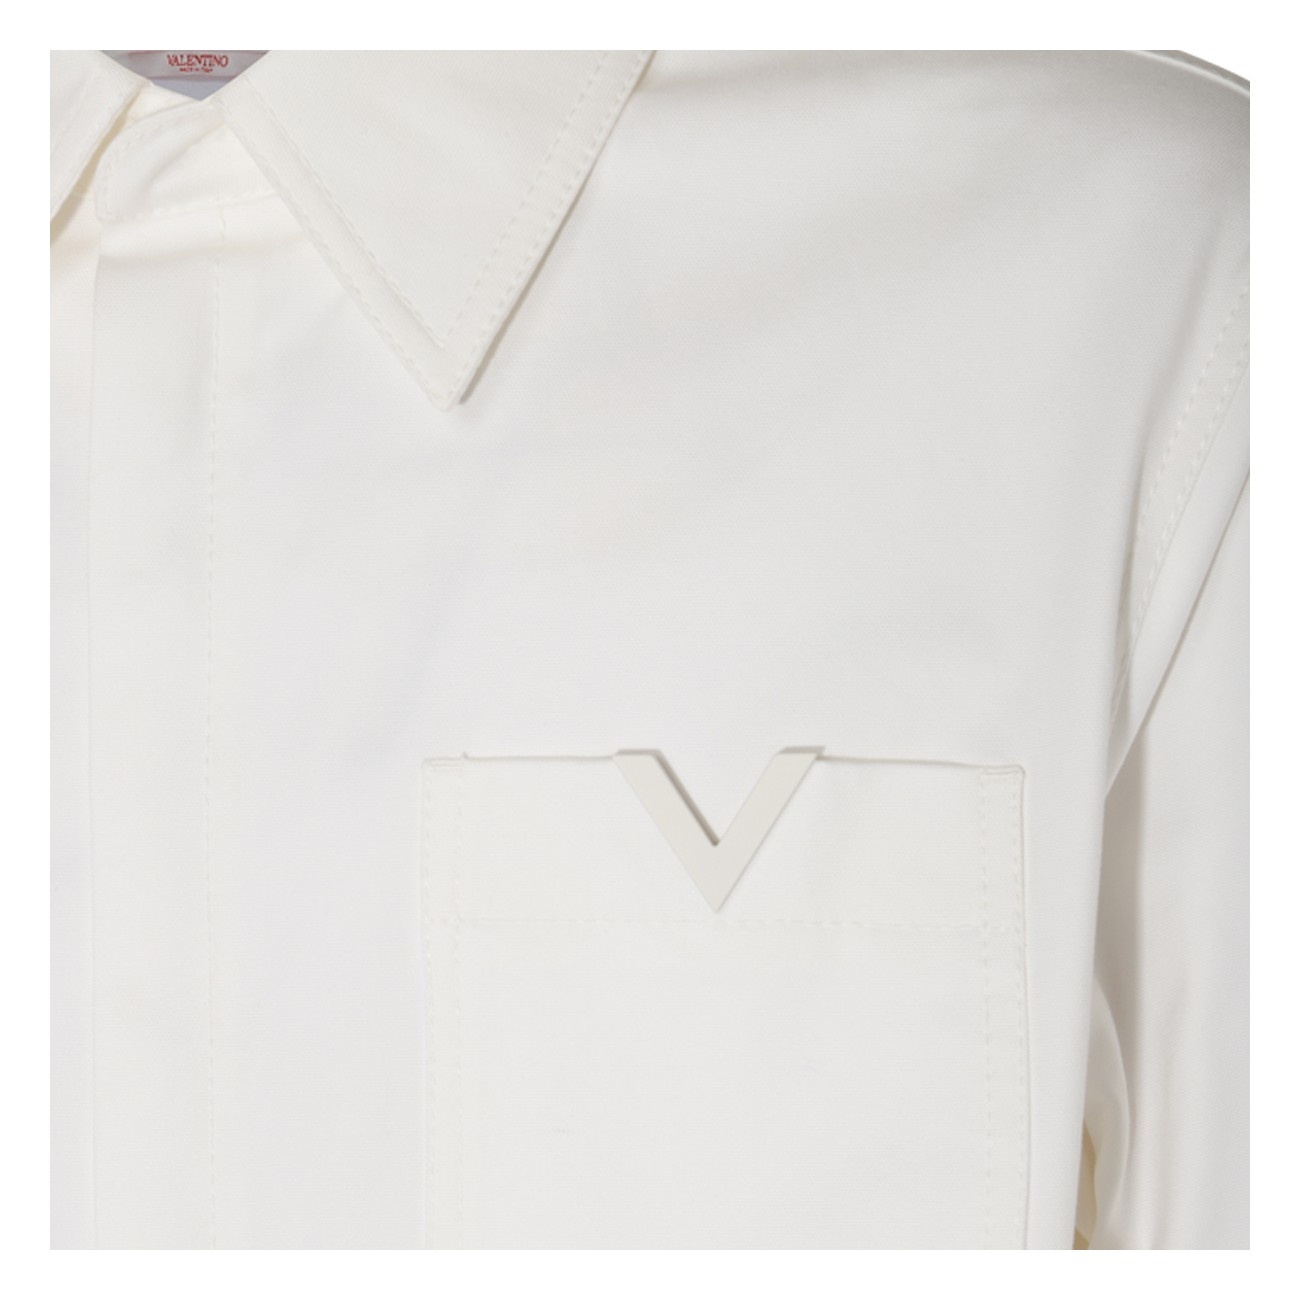 white cotton blend shirt - 3